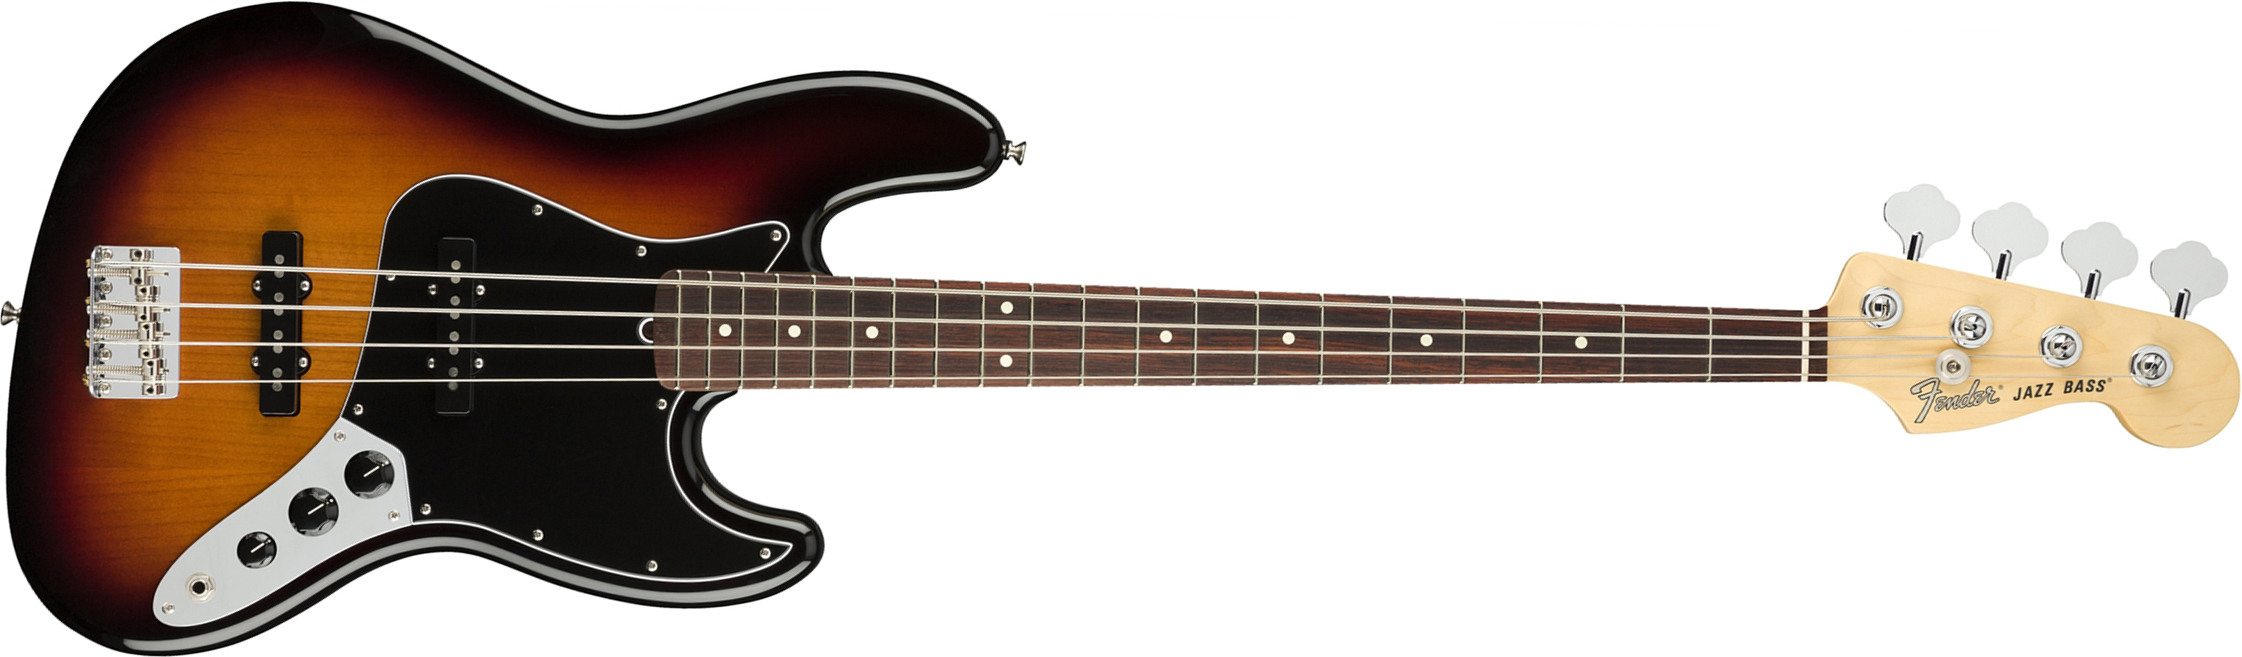 Fender Jazz Bass American Performer Usa Rw - 3-color Sunburst - Bajo eléctrico de cuerpo sólido - Main picture